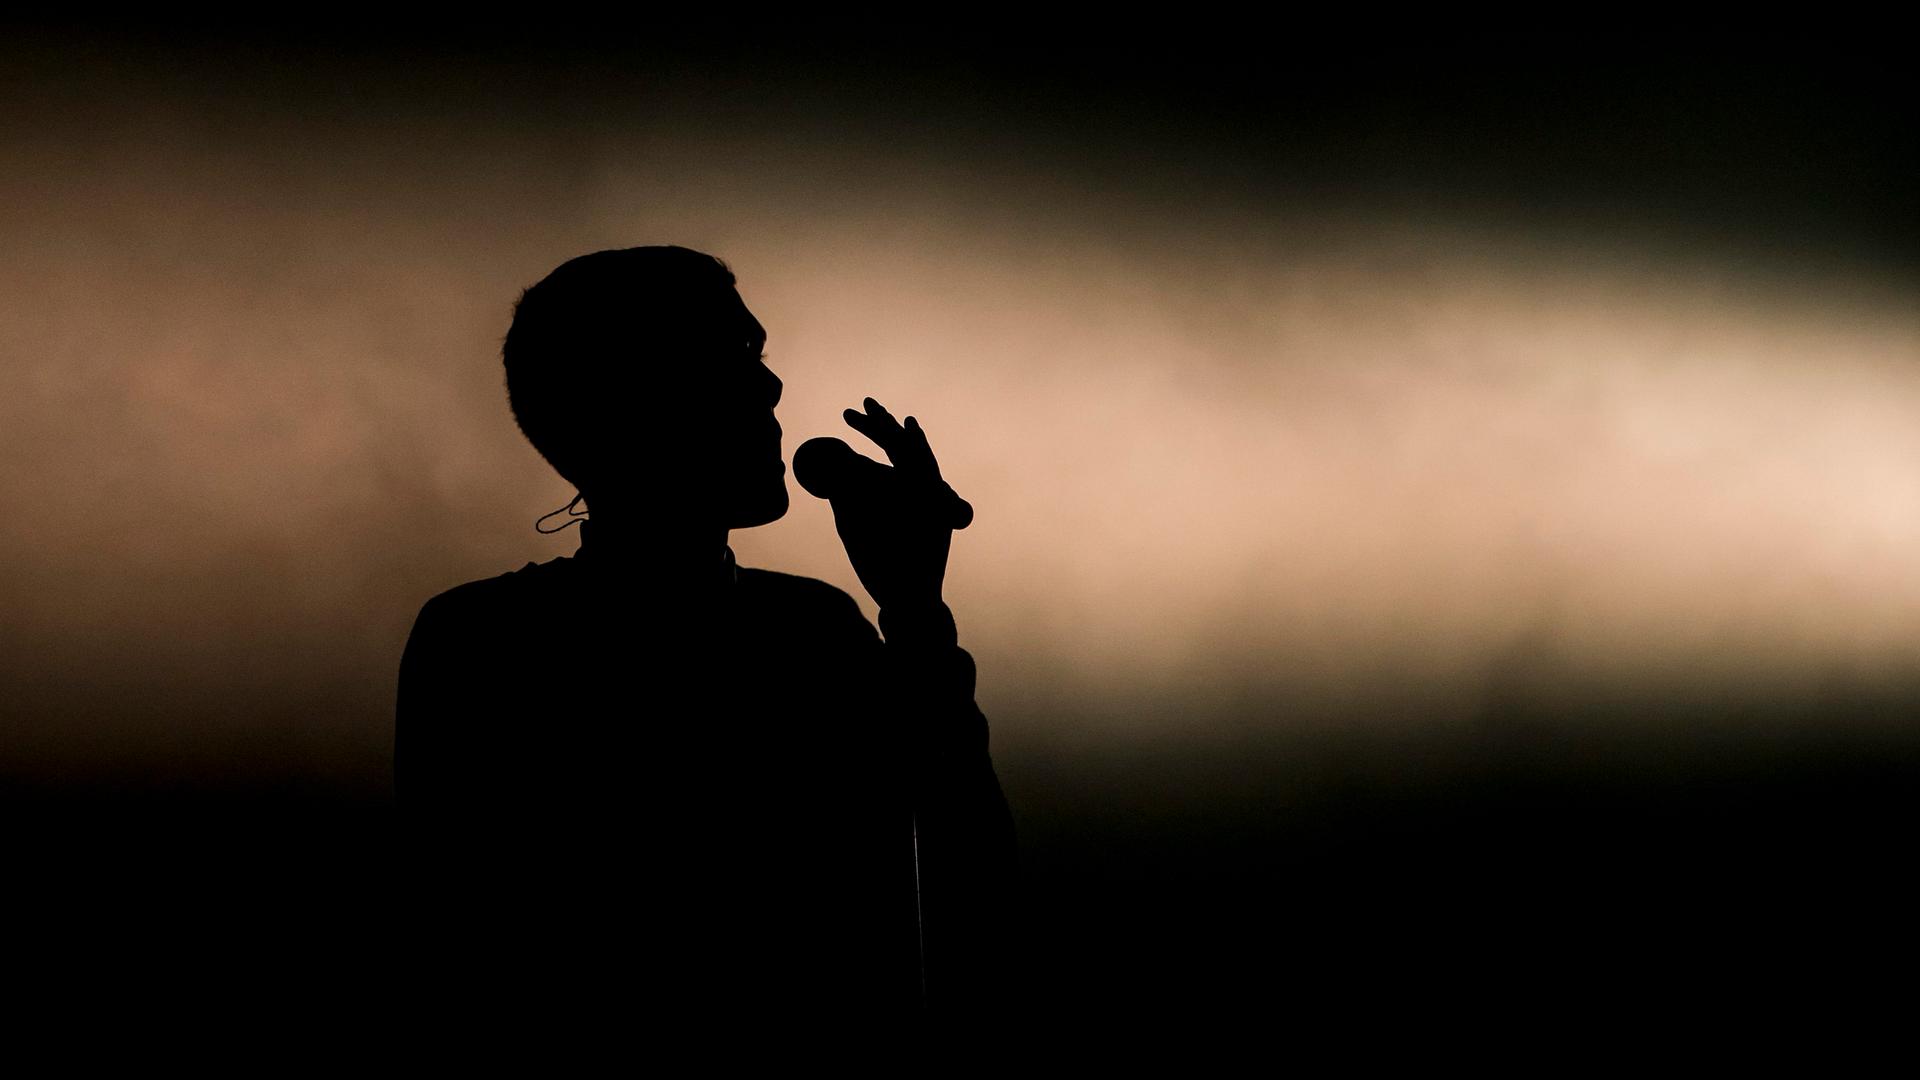 Die Silhouette von Stromaes Kopf, der auf einer Bühne singt.